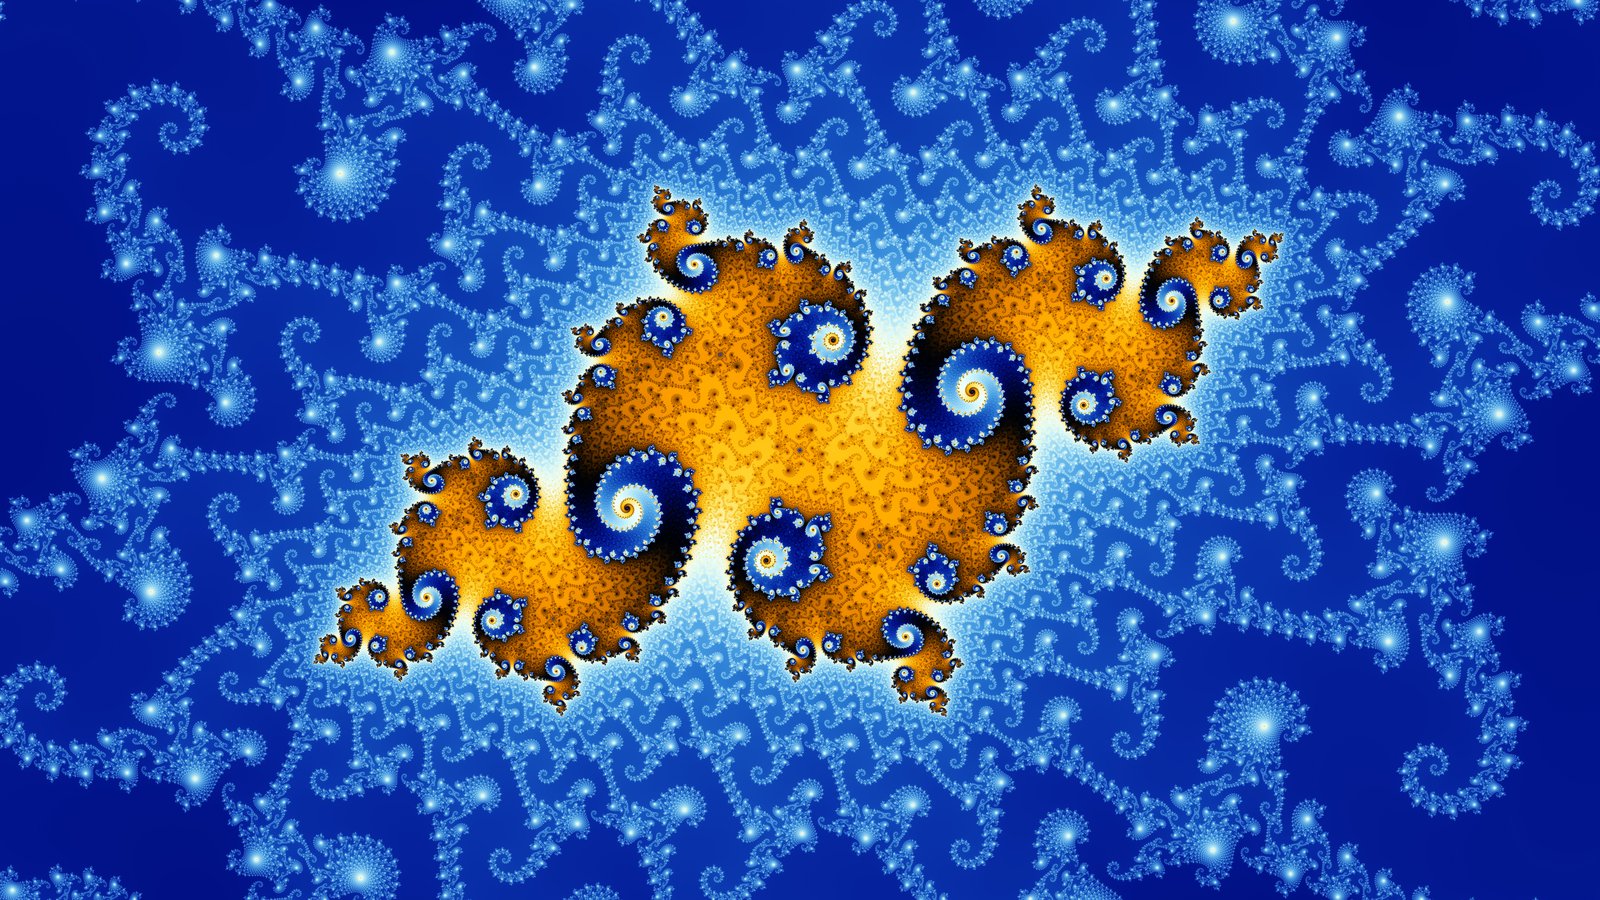 Mandelbrot set wallpaper là một bức tranh kỹ thuật số phức tạp, kết hợp giữa toán học và nghệ thuật. Nó được sử dụng rộng rãi trên các thiết bị di động hoặc nền tường của máy tính để thể hiện sự phức tạp đáng ngạc nhiên của dòng số học. Hãy xem qua hình ảnh và được trải nghiệm sự tuyệt vời của nó!